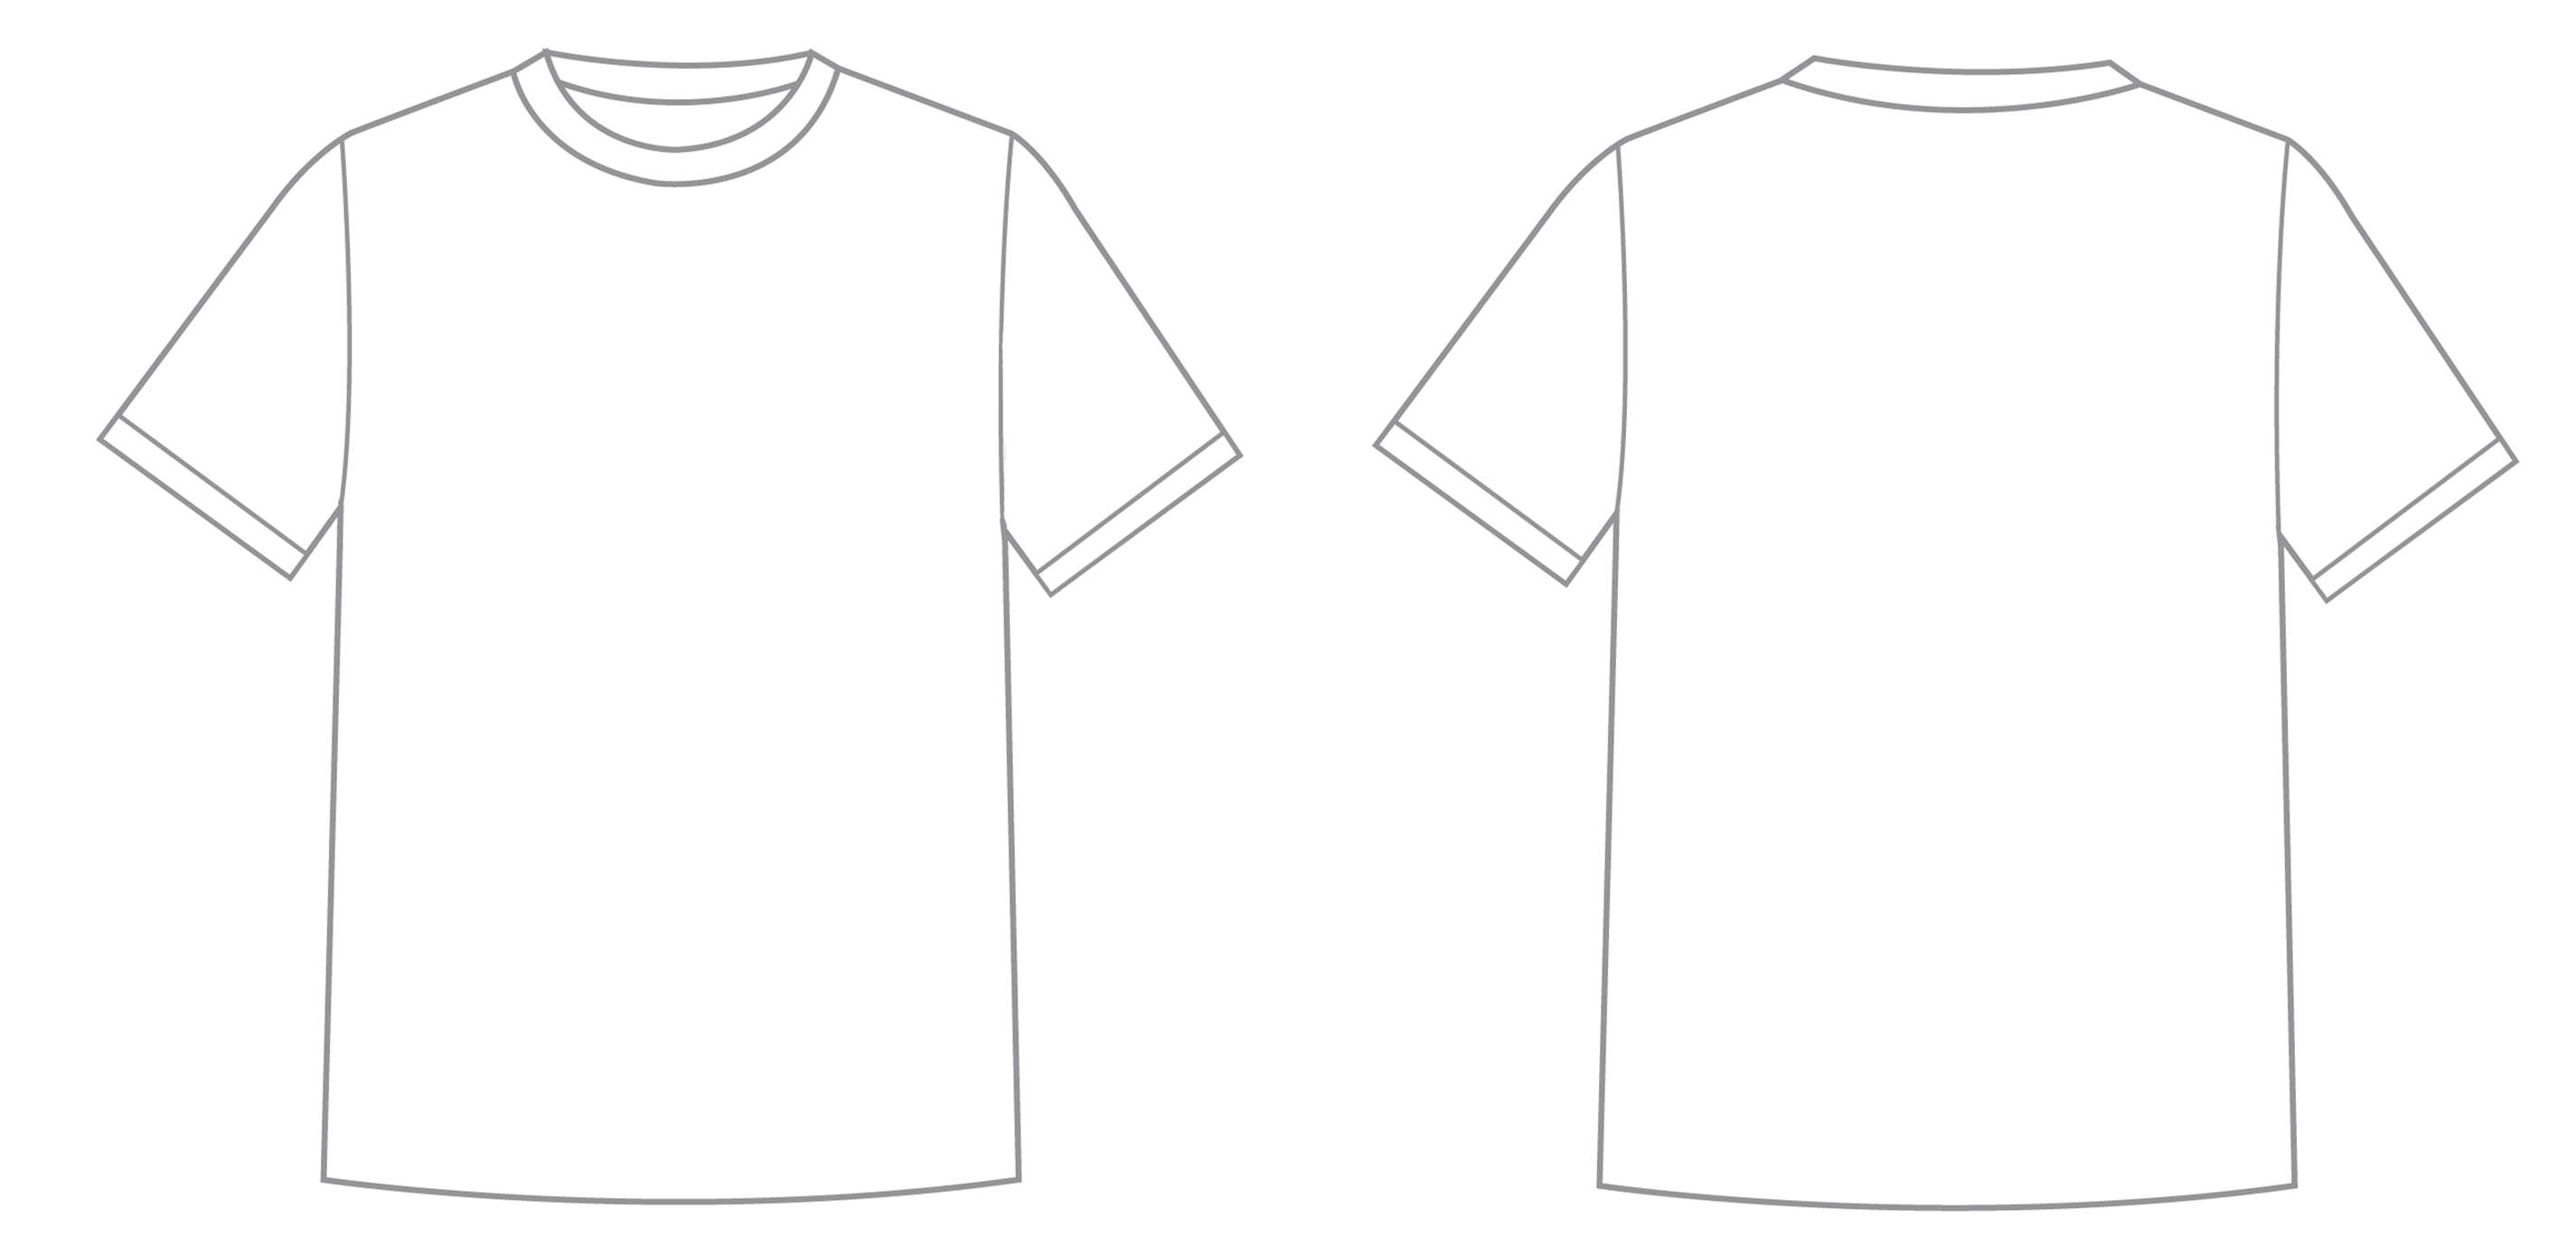 TEZC Competition #2 - Shirt Design